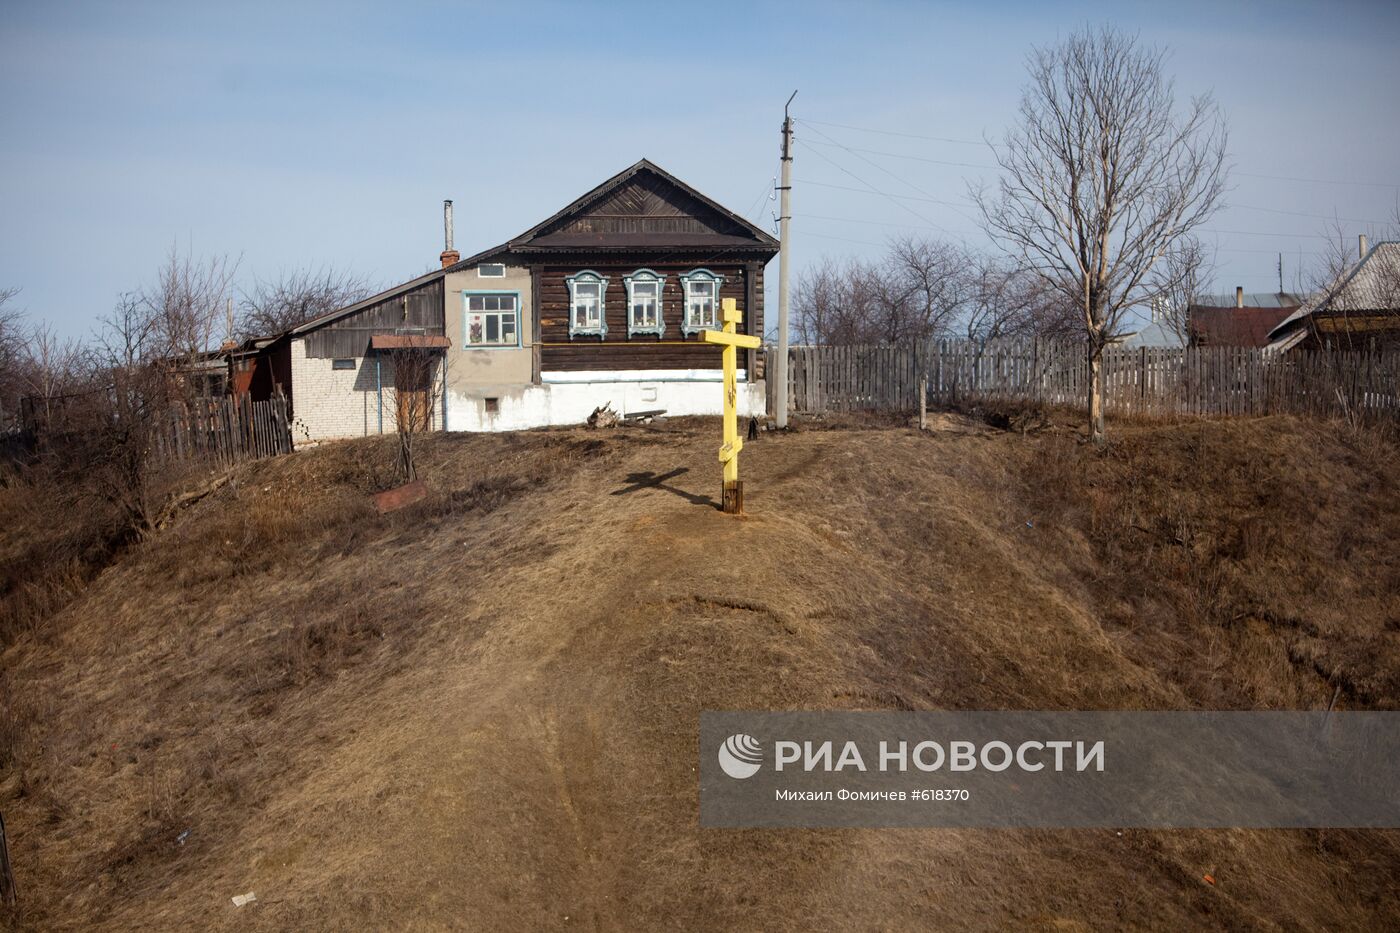 Крест на месте дома, где предположительно жил Илья Муромец